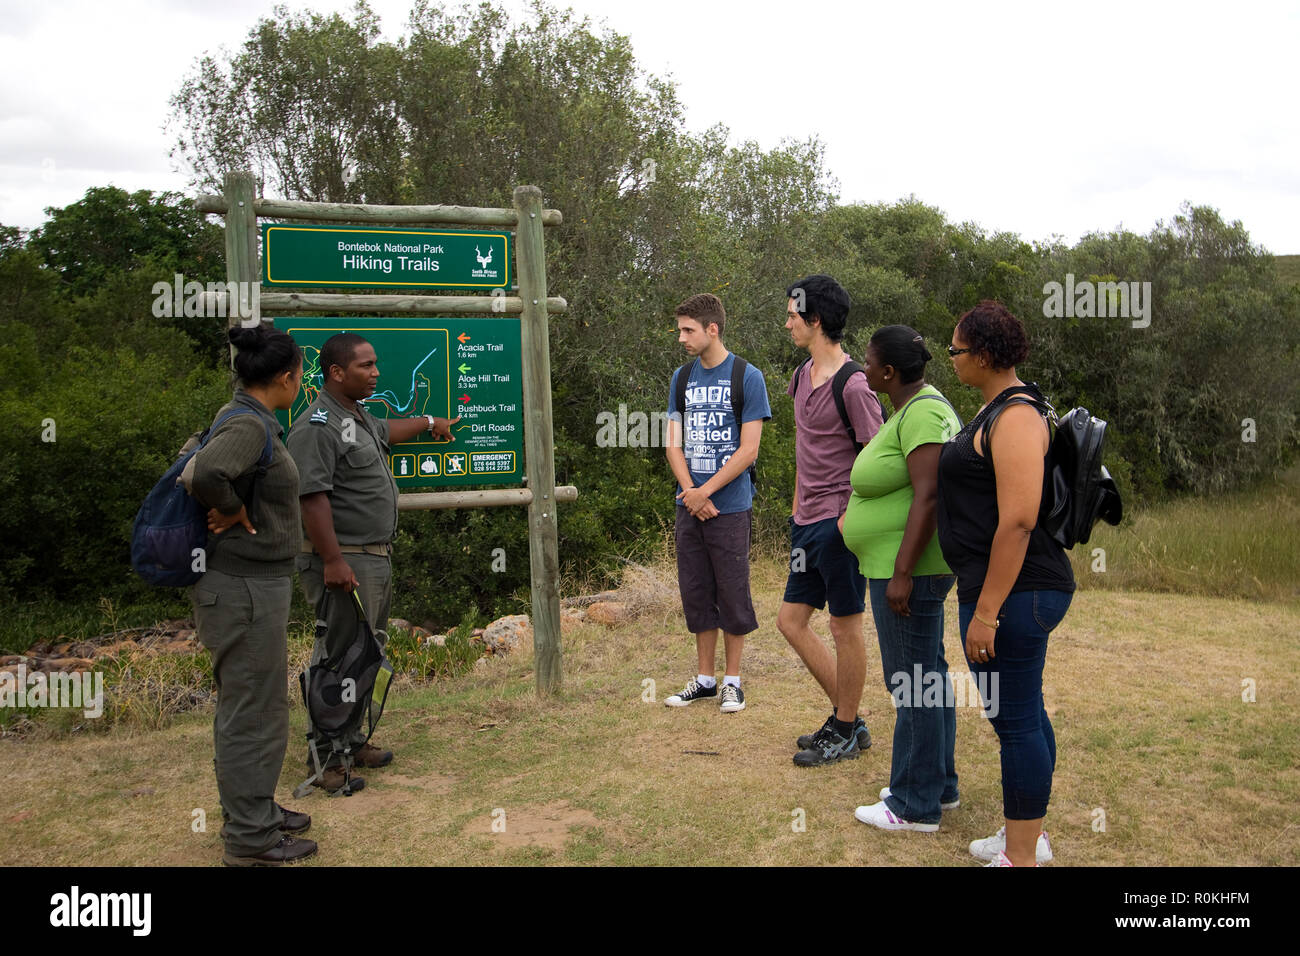 Gli escursionisti e i rangers guardando a segno per Bontebok National Park Foto Stock